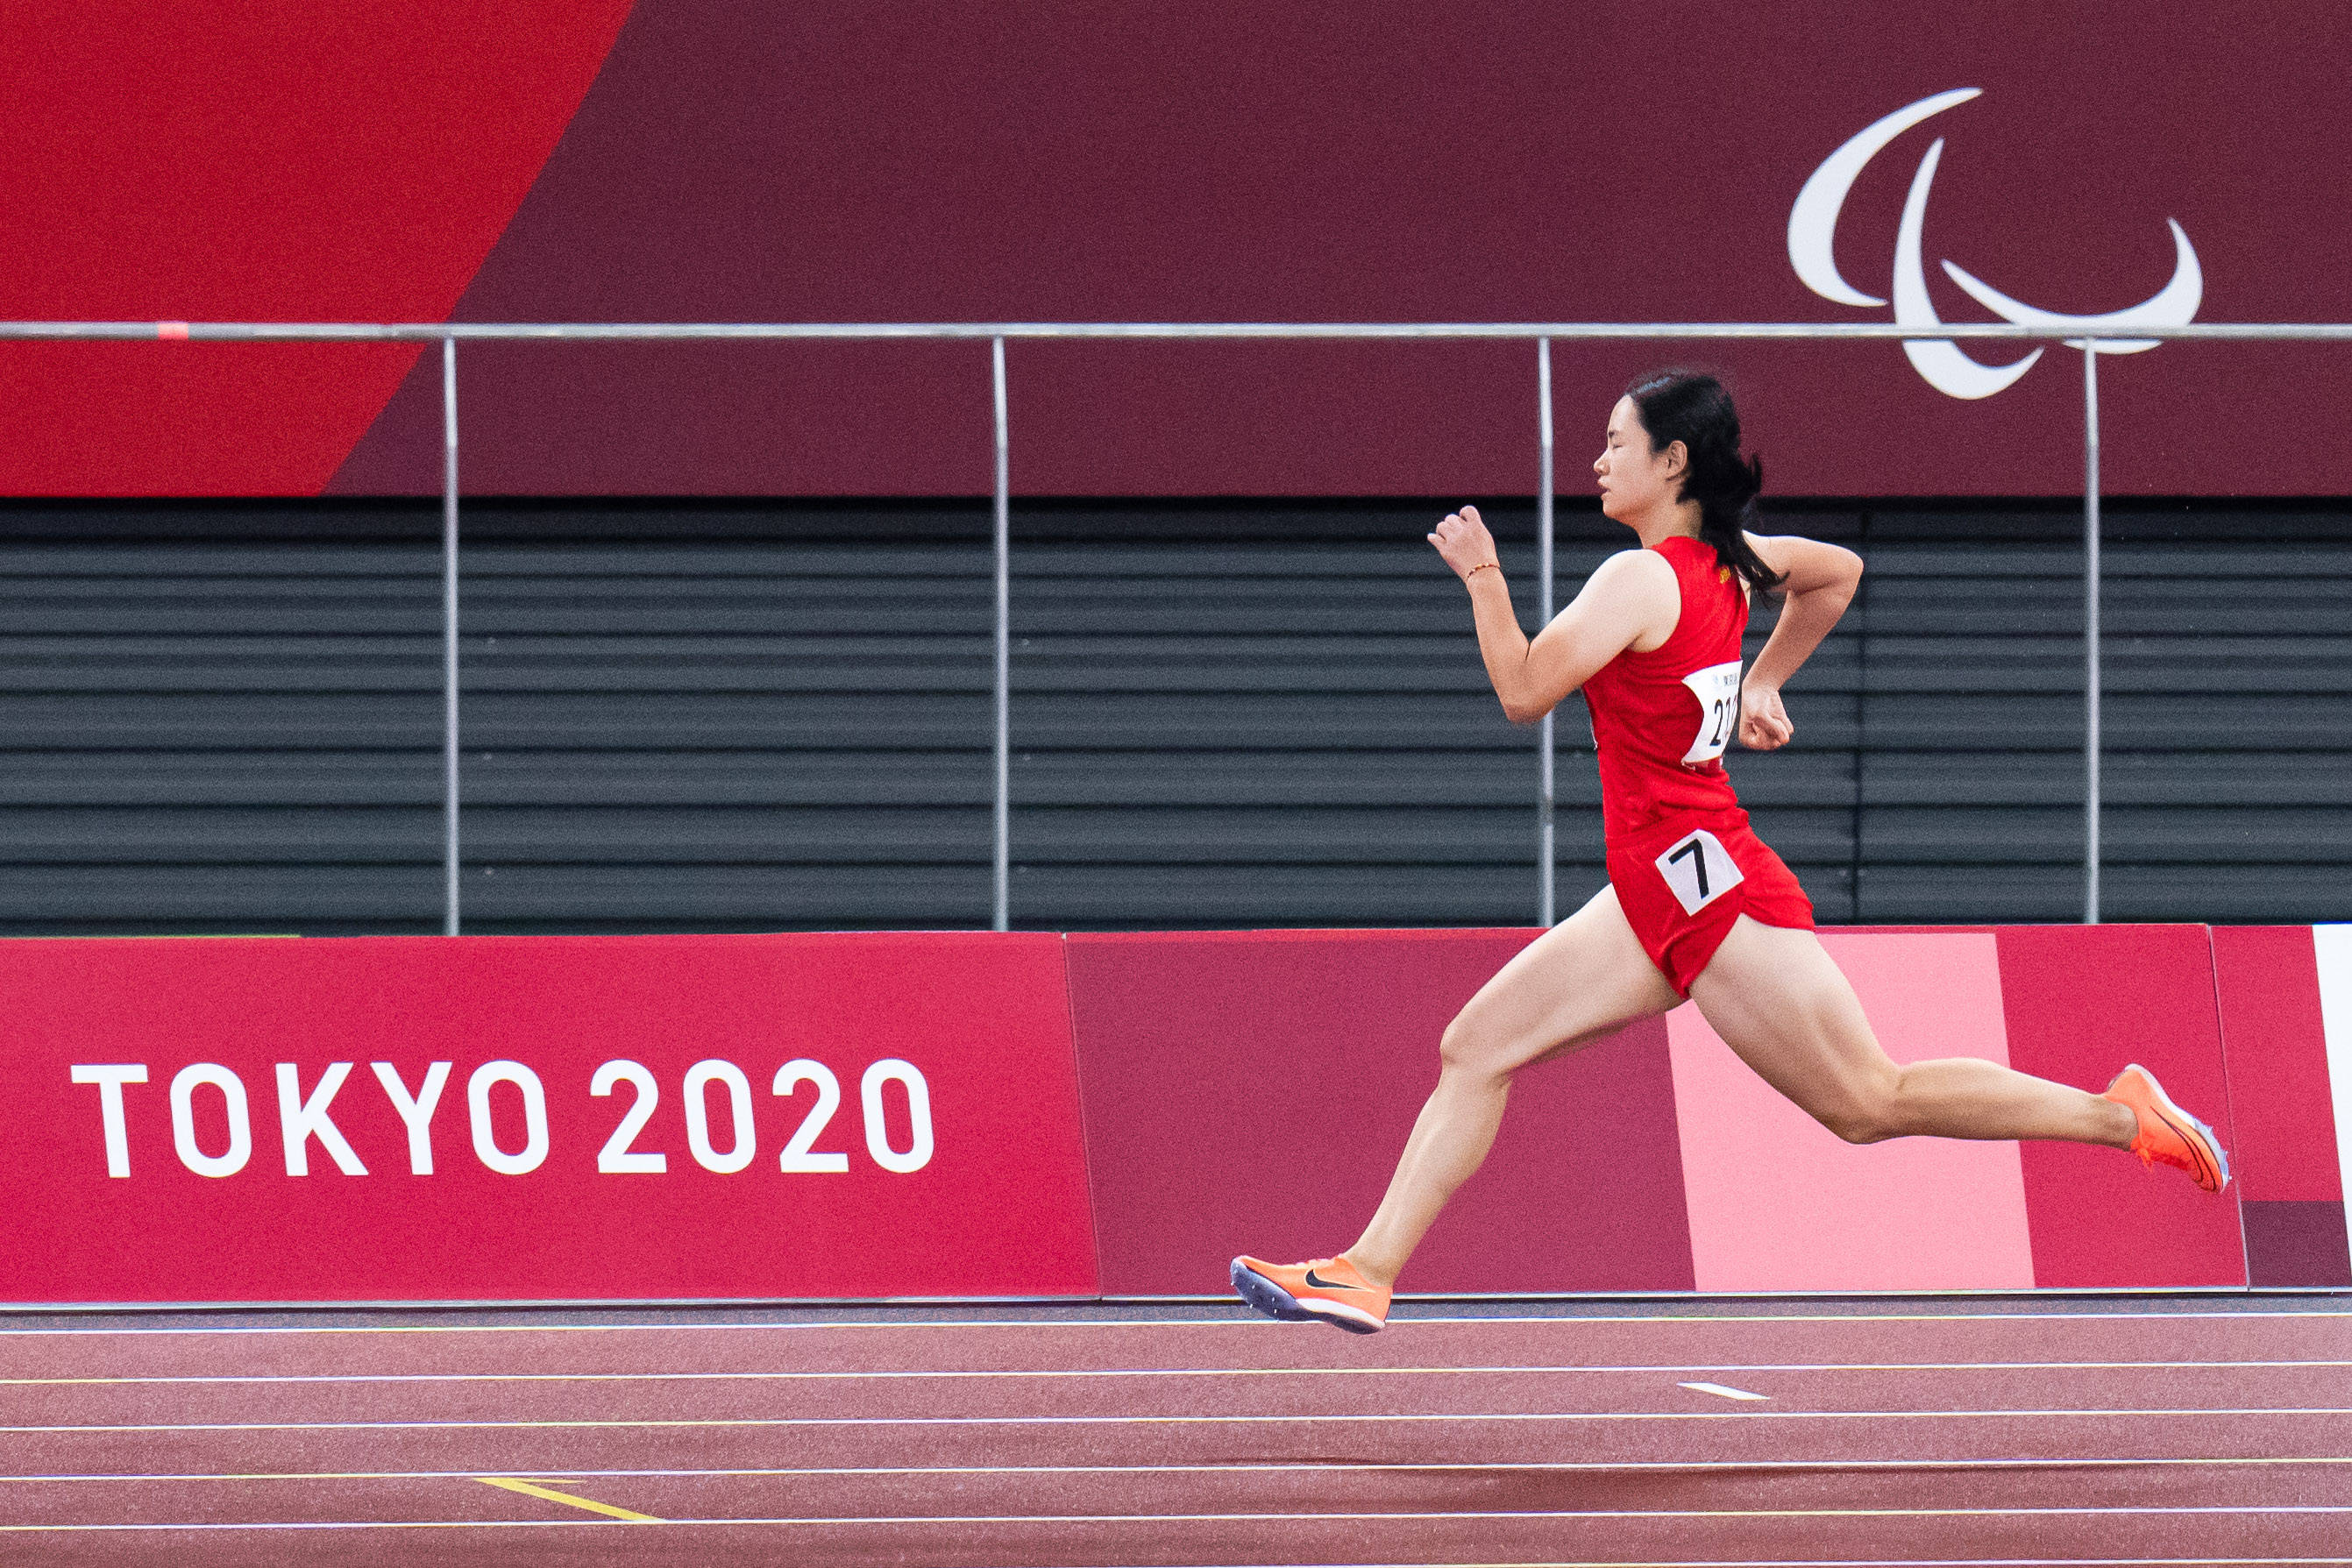 张金加 摄当日,在东京残奥会田径女子400米t37级决赛中,中国选手